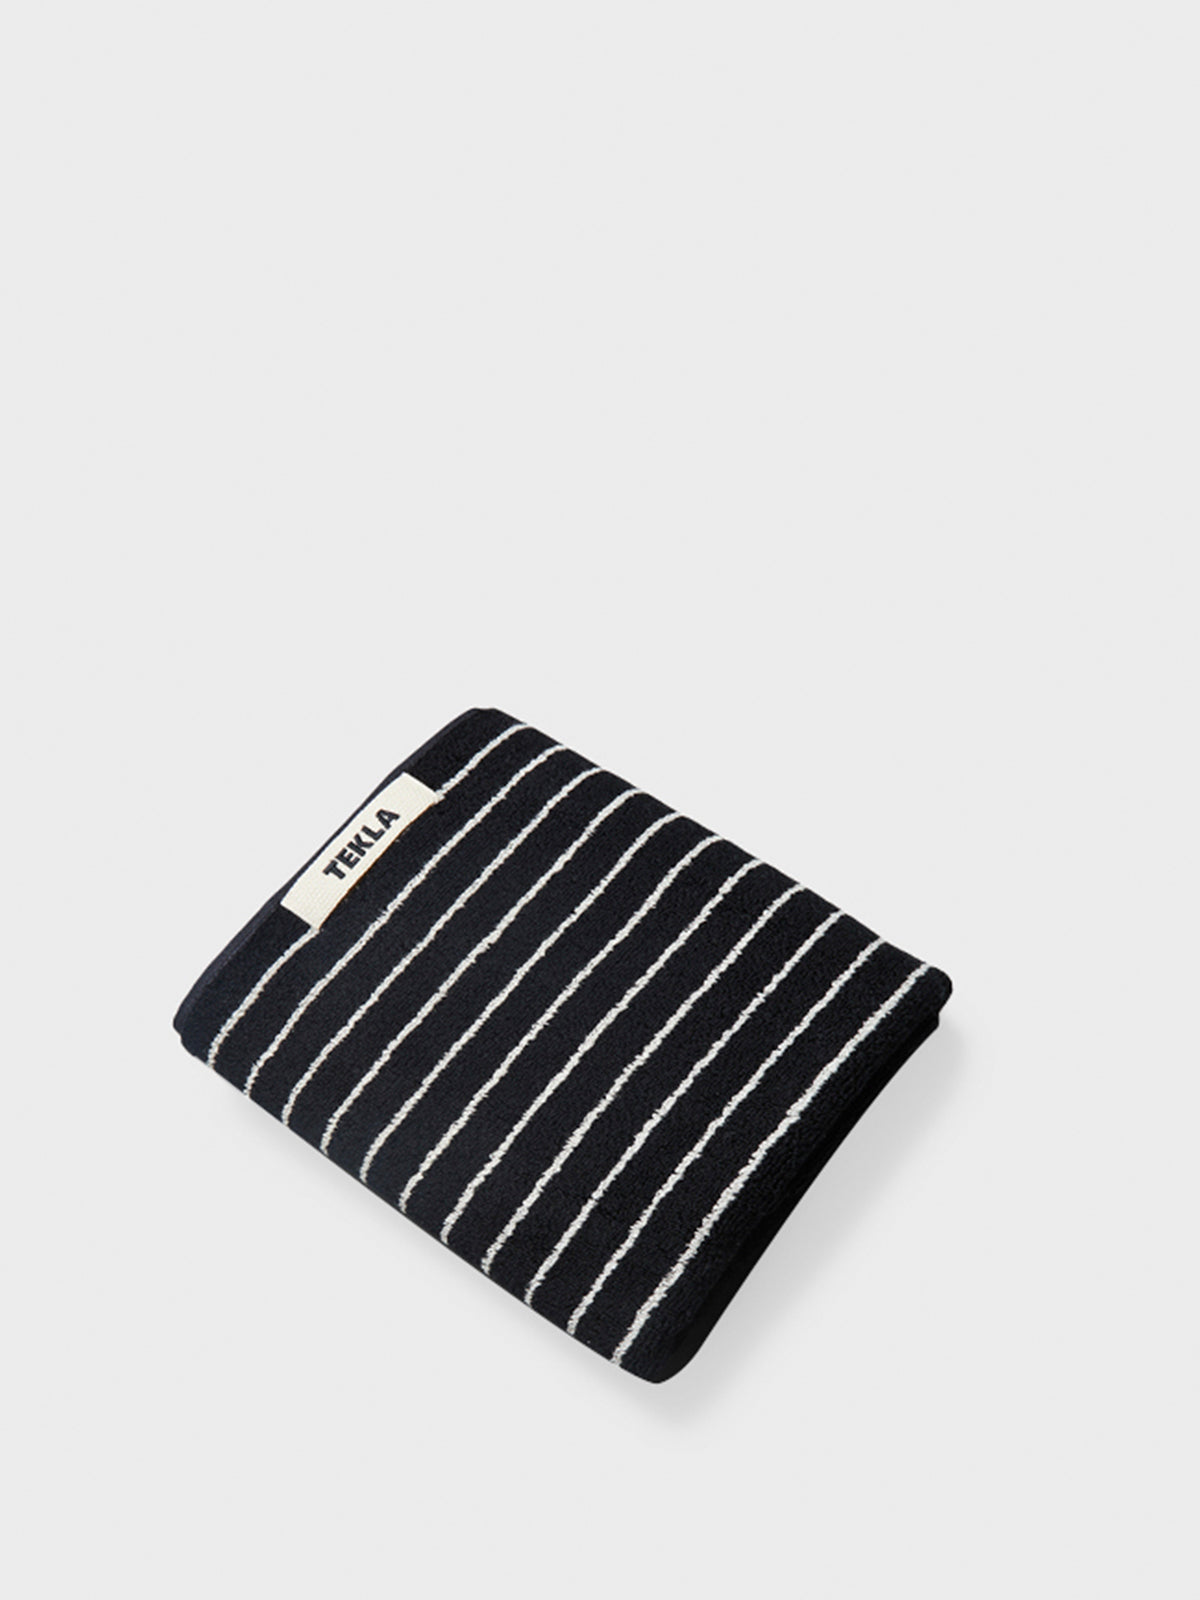 Tekla - Hand Towel in Black Stripes